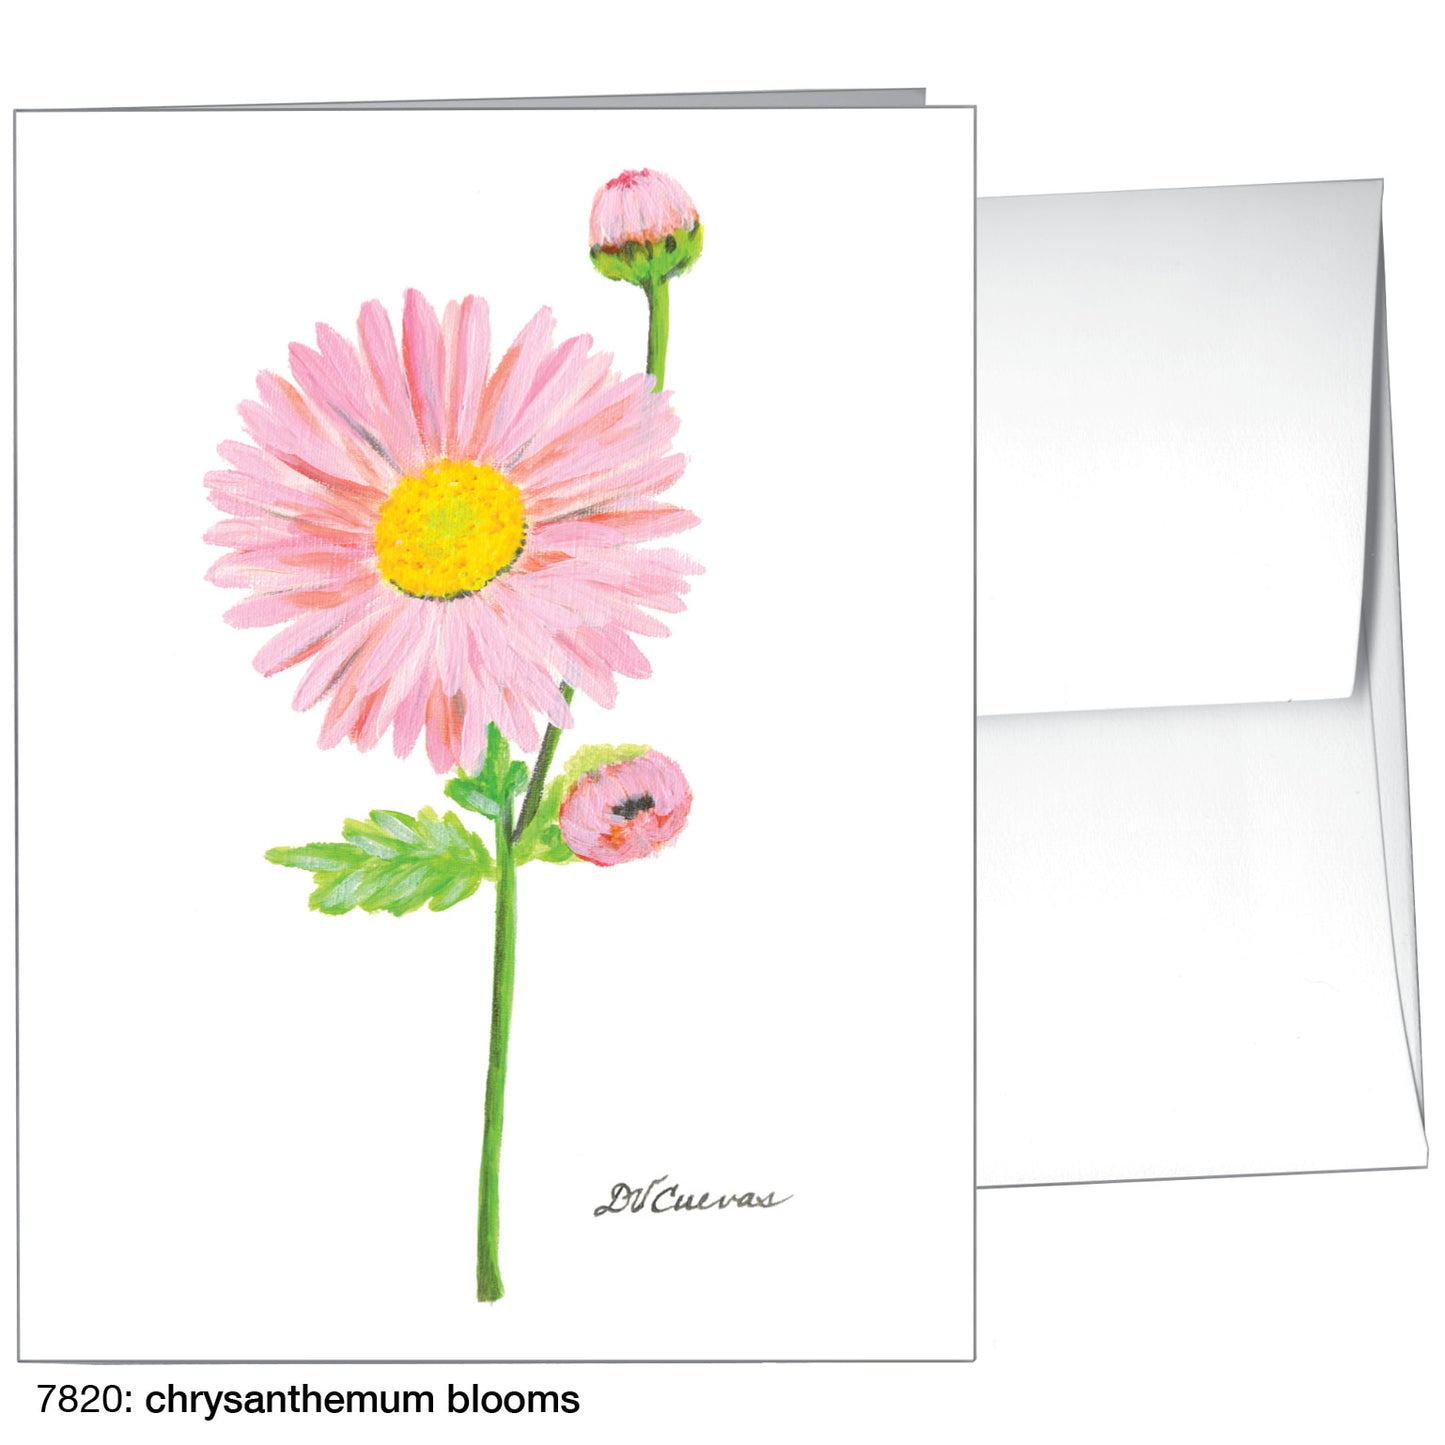 Chrysanthemum Blooms, Greeting Card (7820)